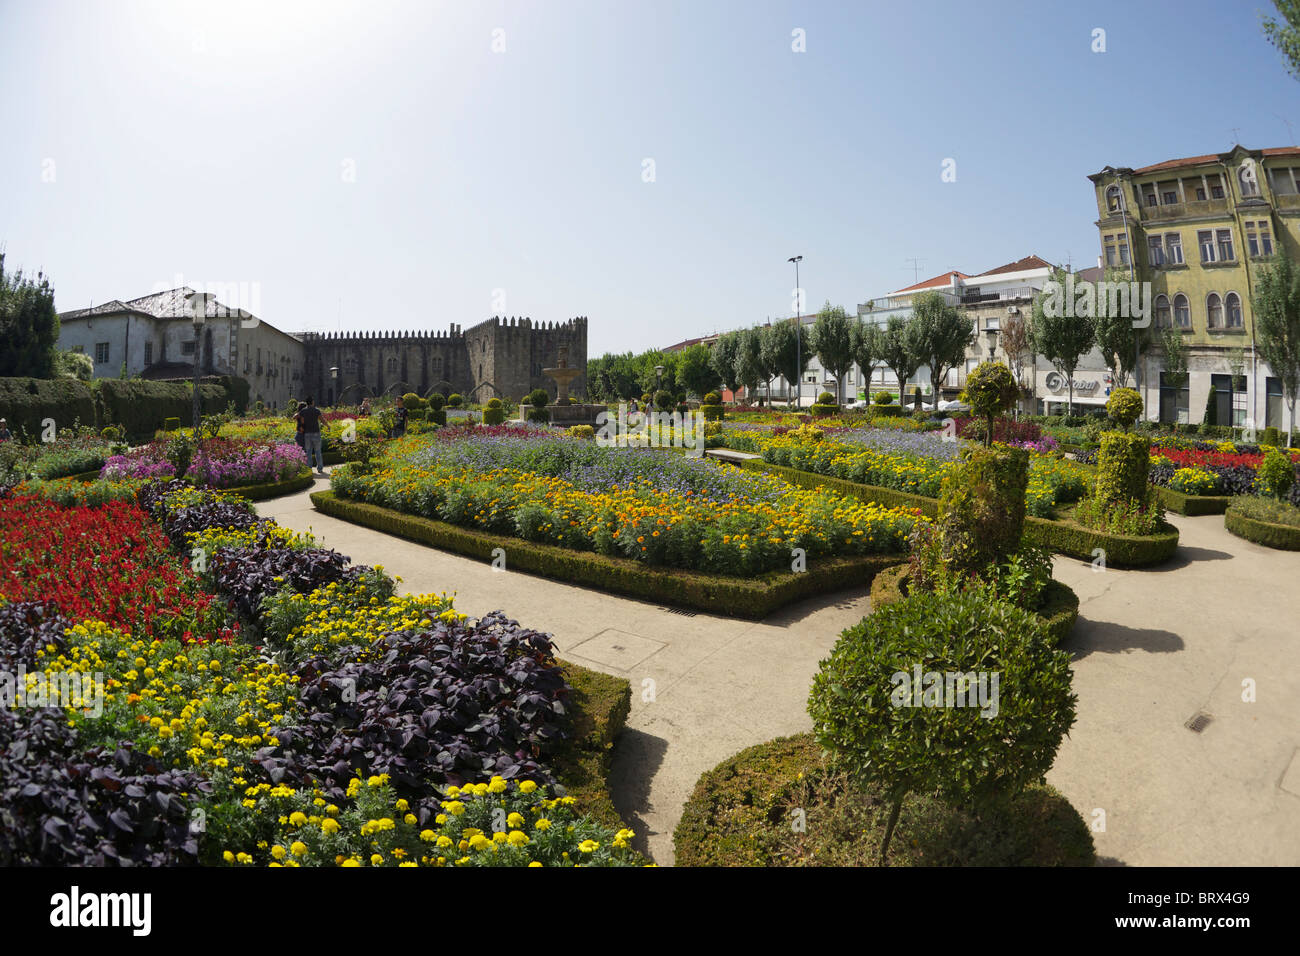 Well kept flower gardens in Braga, Portugal. Stock Photo